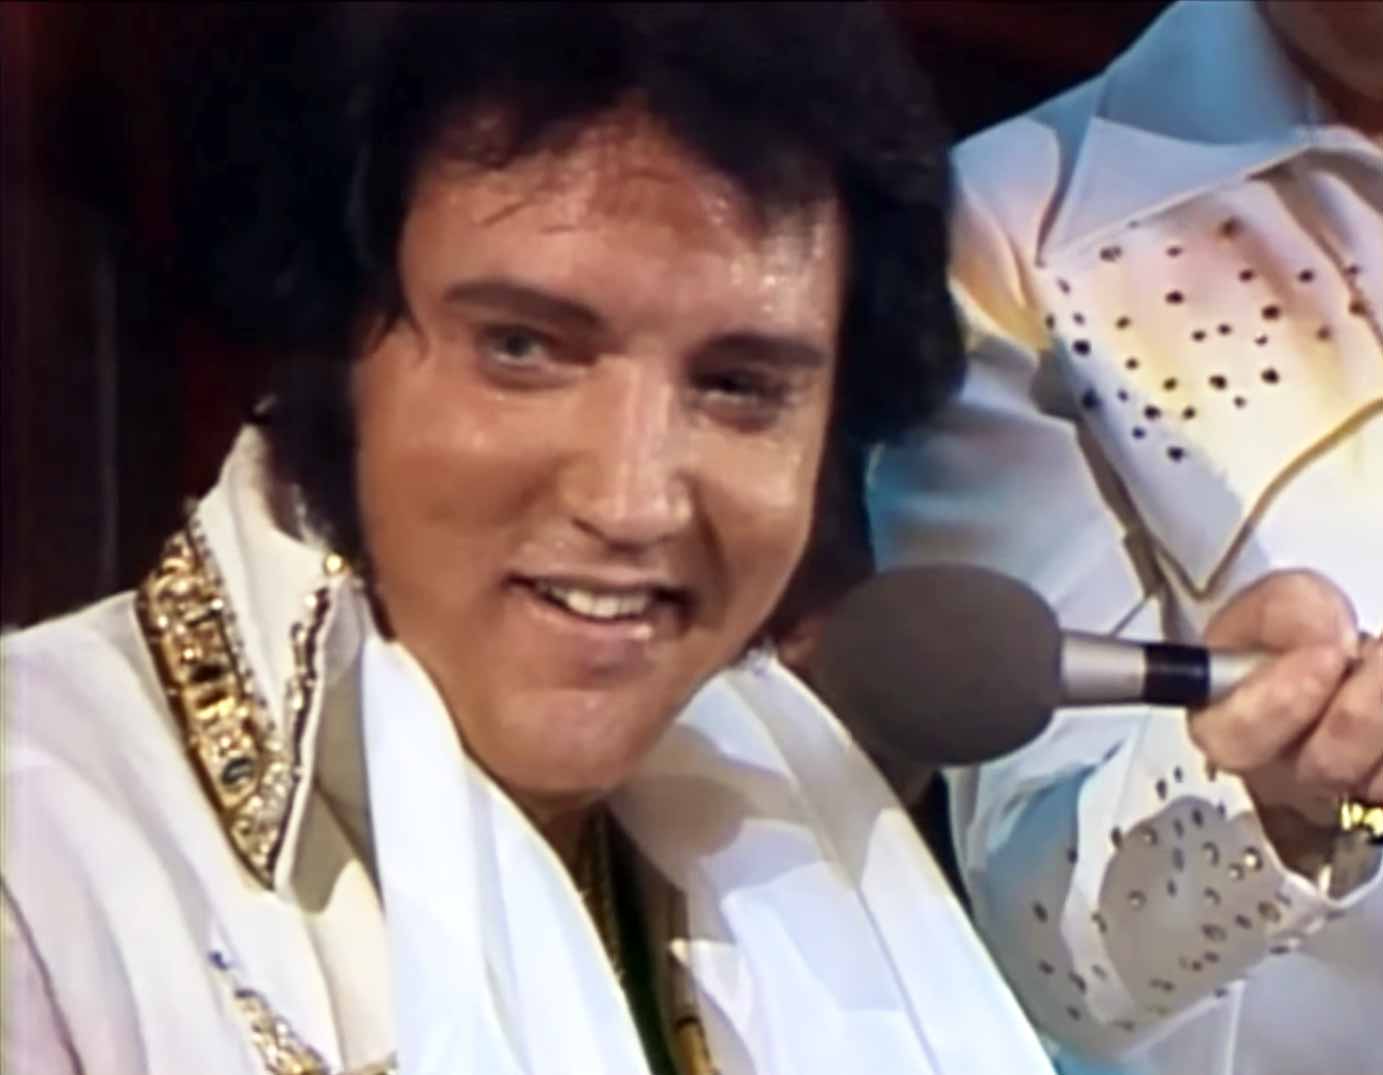 Elvis Presley - Trouble (Legendado) 